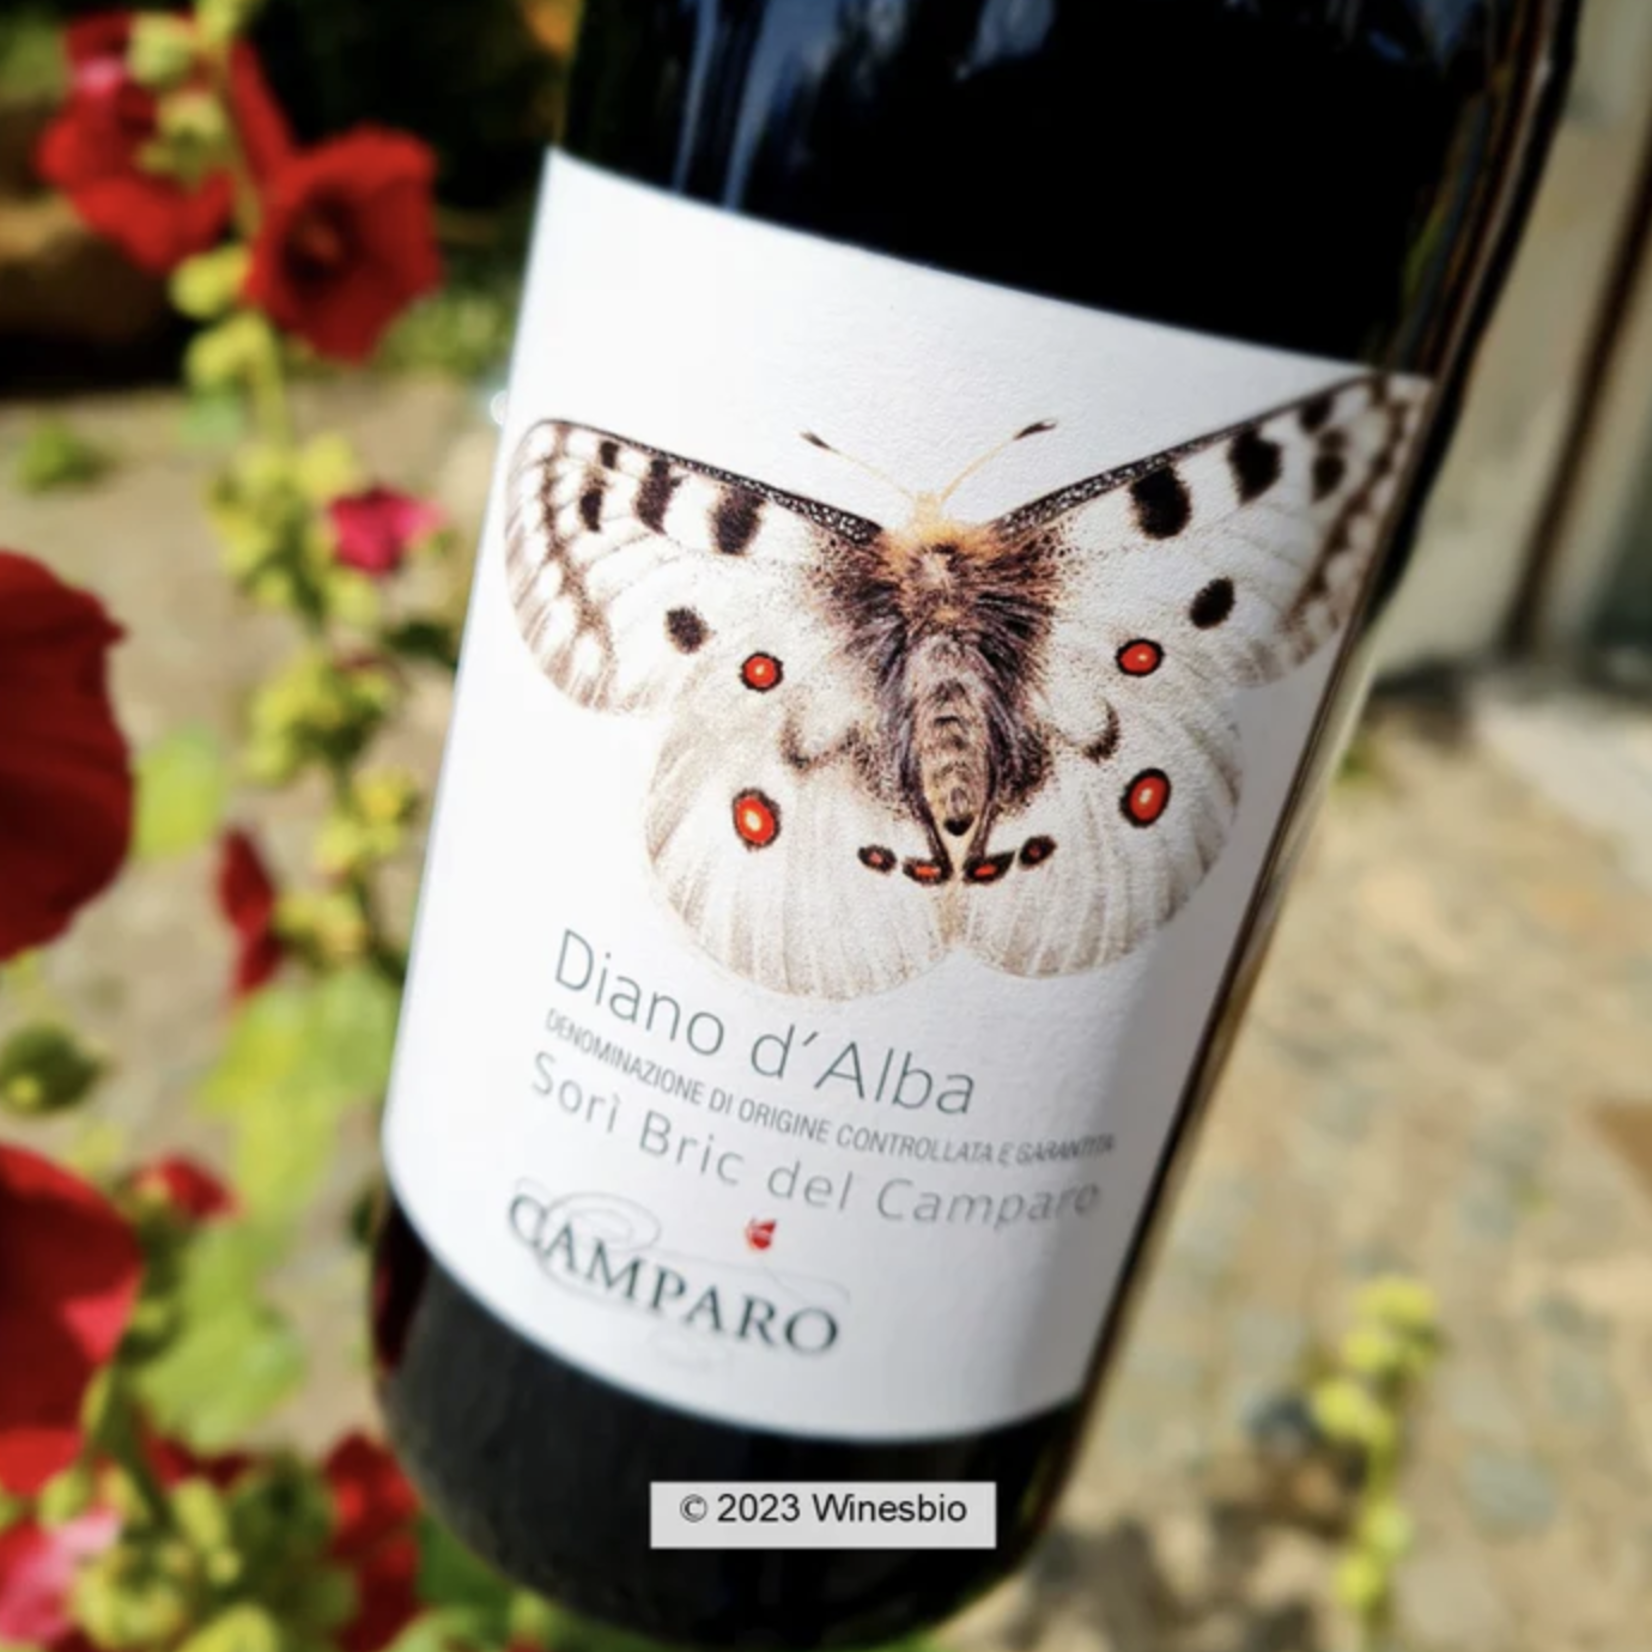 Wine Camparo Dolcetto Diano d'Alba Sori Bric del Camparo 2021